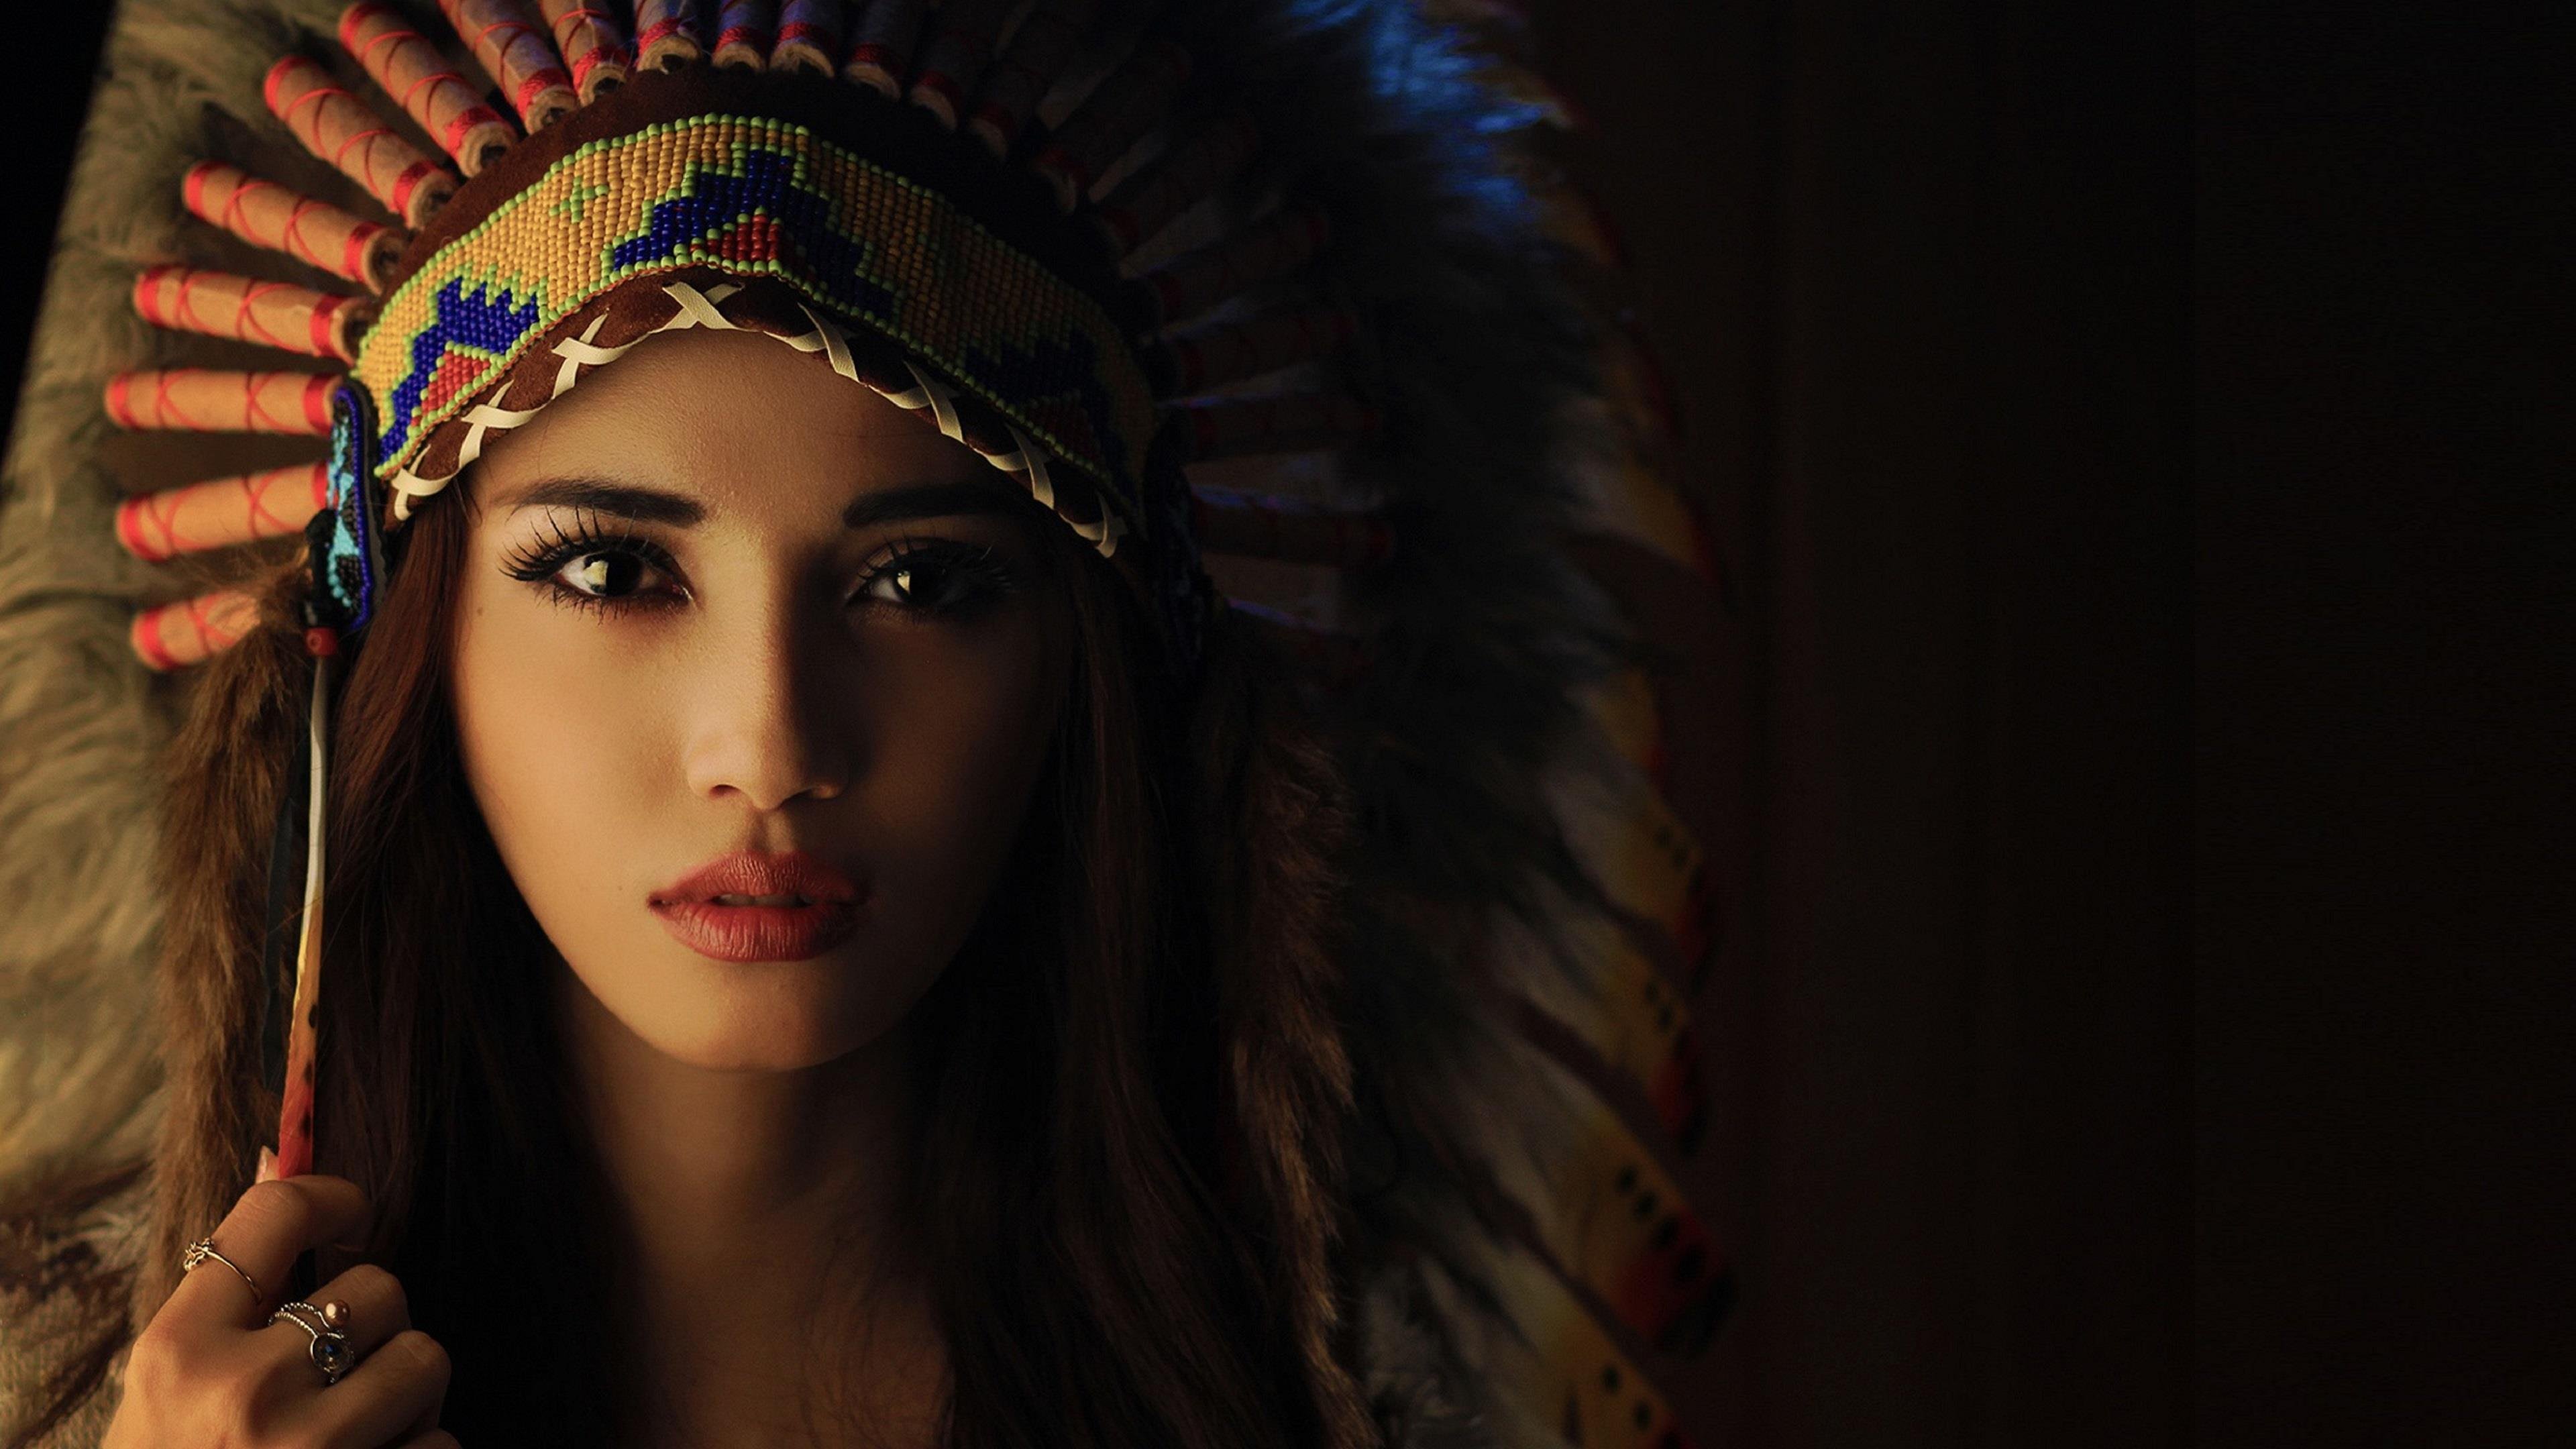 Скво. Аманда Эдкинс индеец СКВО. Индейцы СКВО Северной Америки. Индейцы девушки. Красивые индейские девушки.